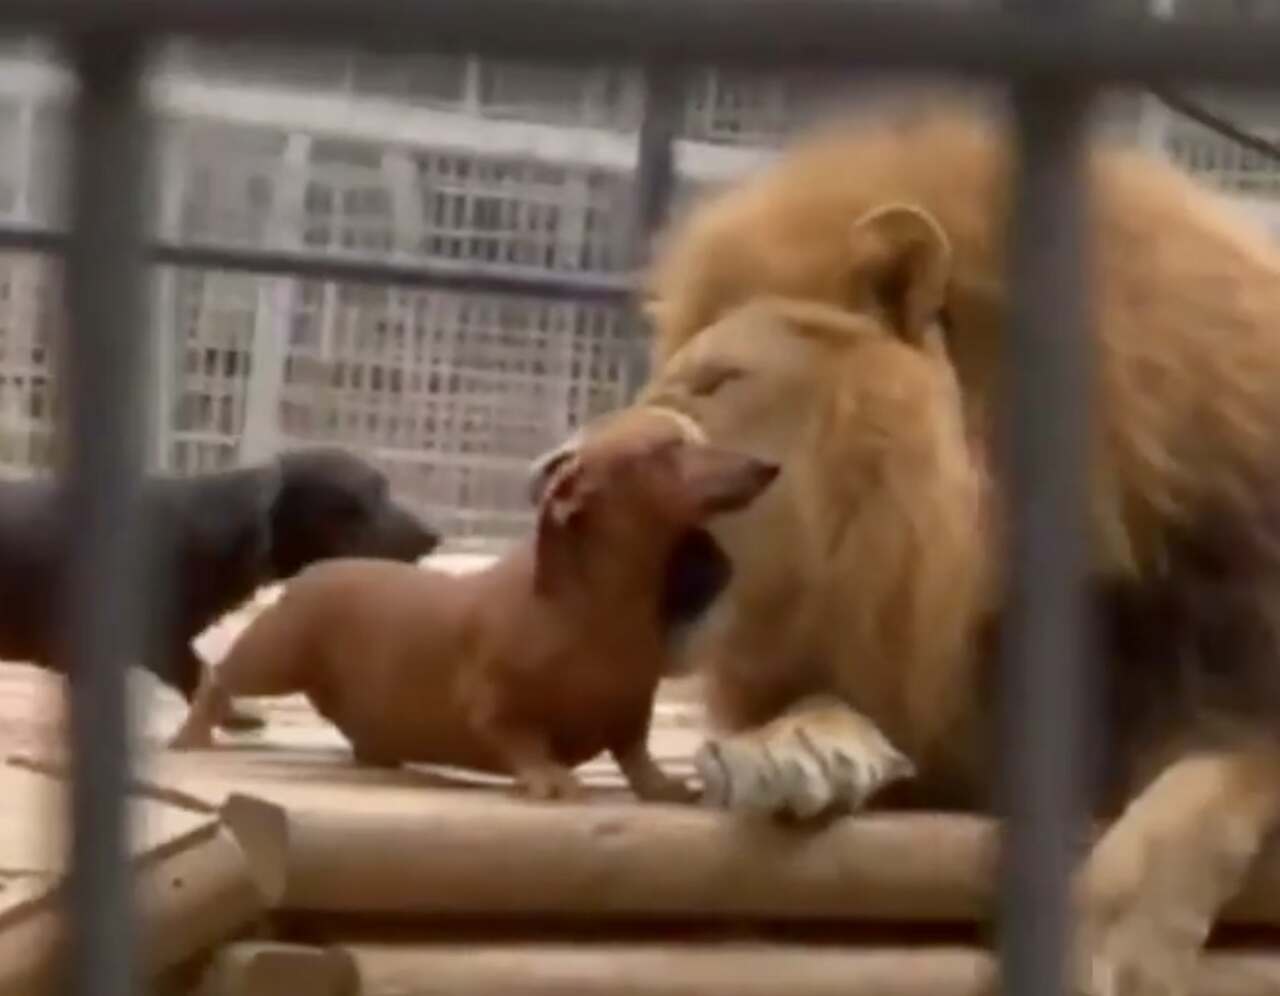 Vaikuttava video: Pennut 'taistelevat' leijonan kanssa ja selviytyvät kertoakseen tarinan